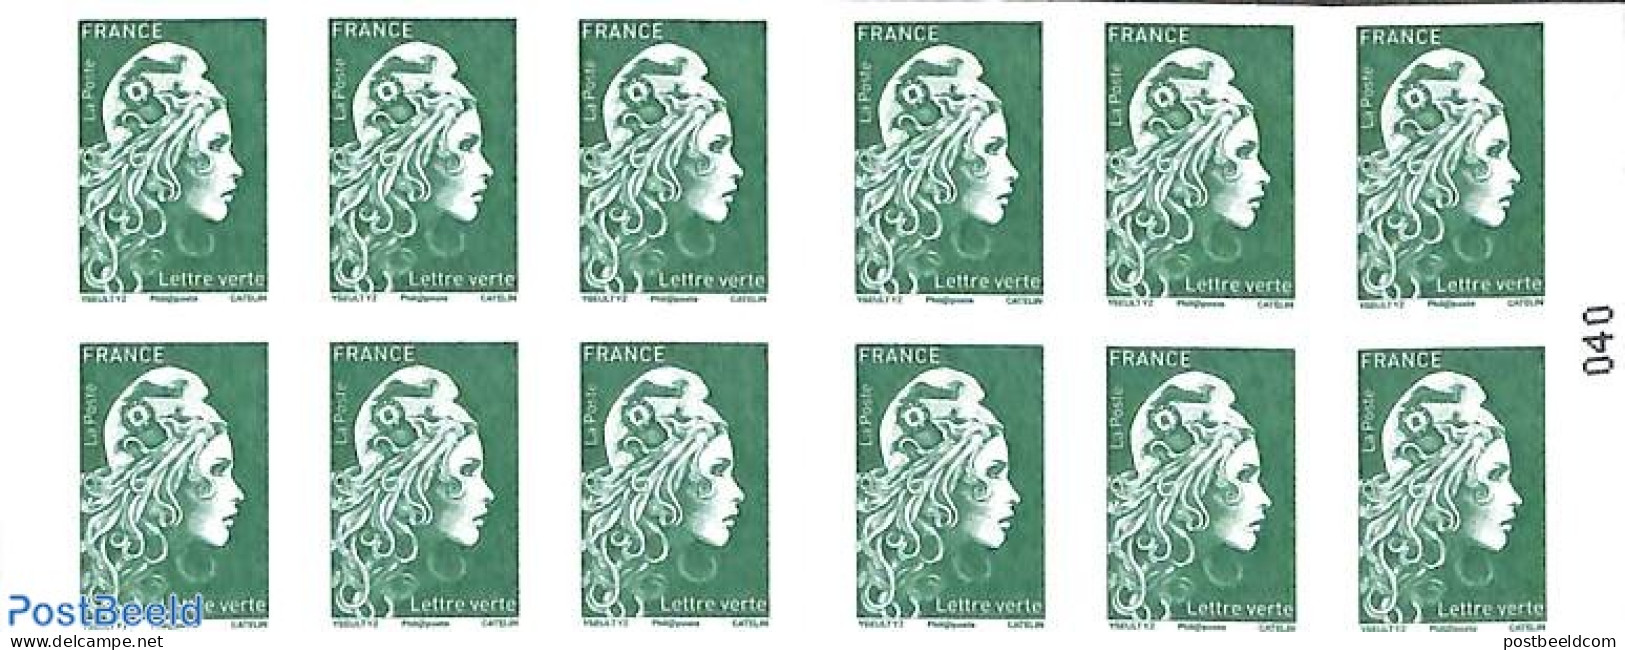 France 2018 Definitives Booklet, Mint NH, Stamp Booklets - Unused Stamps